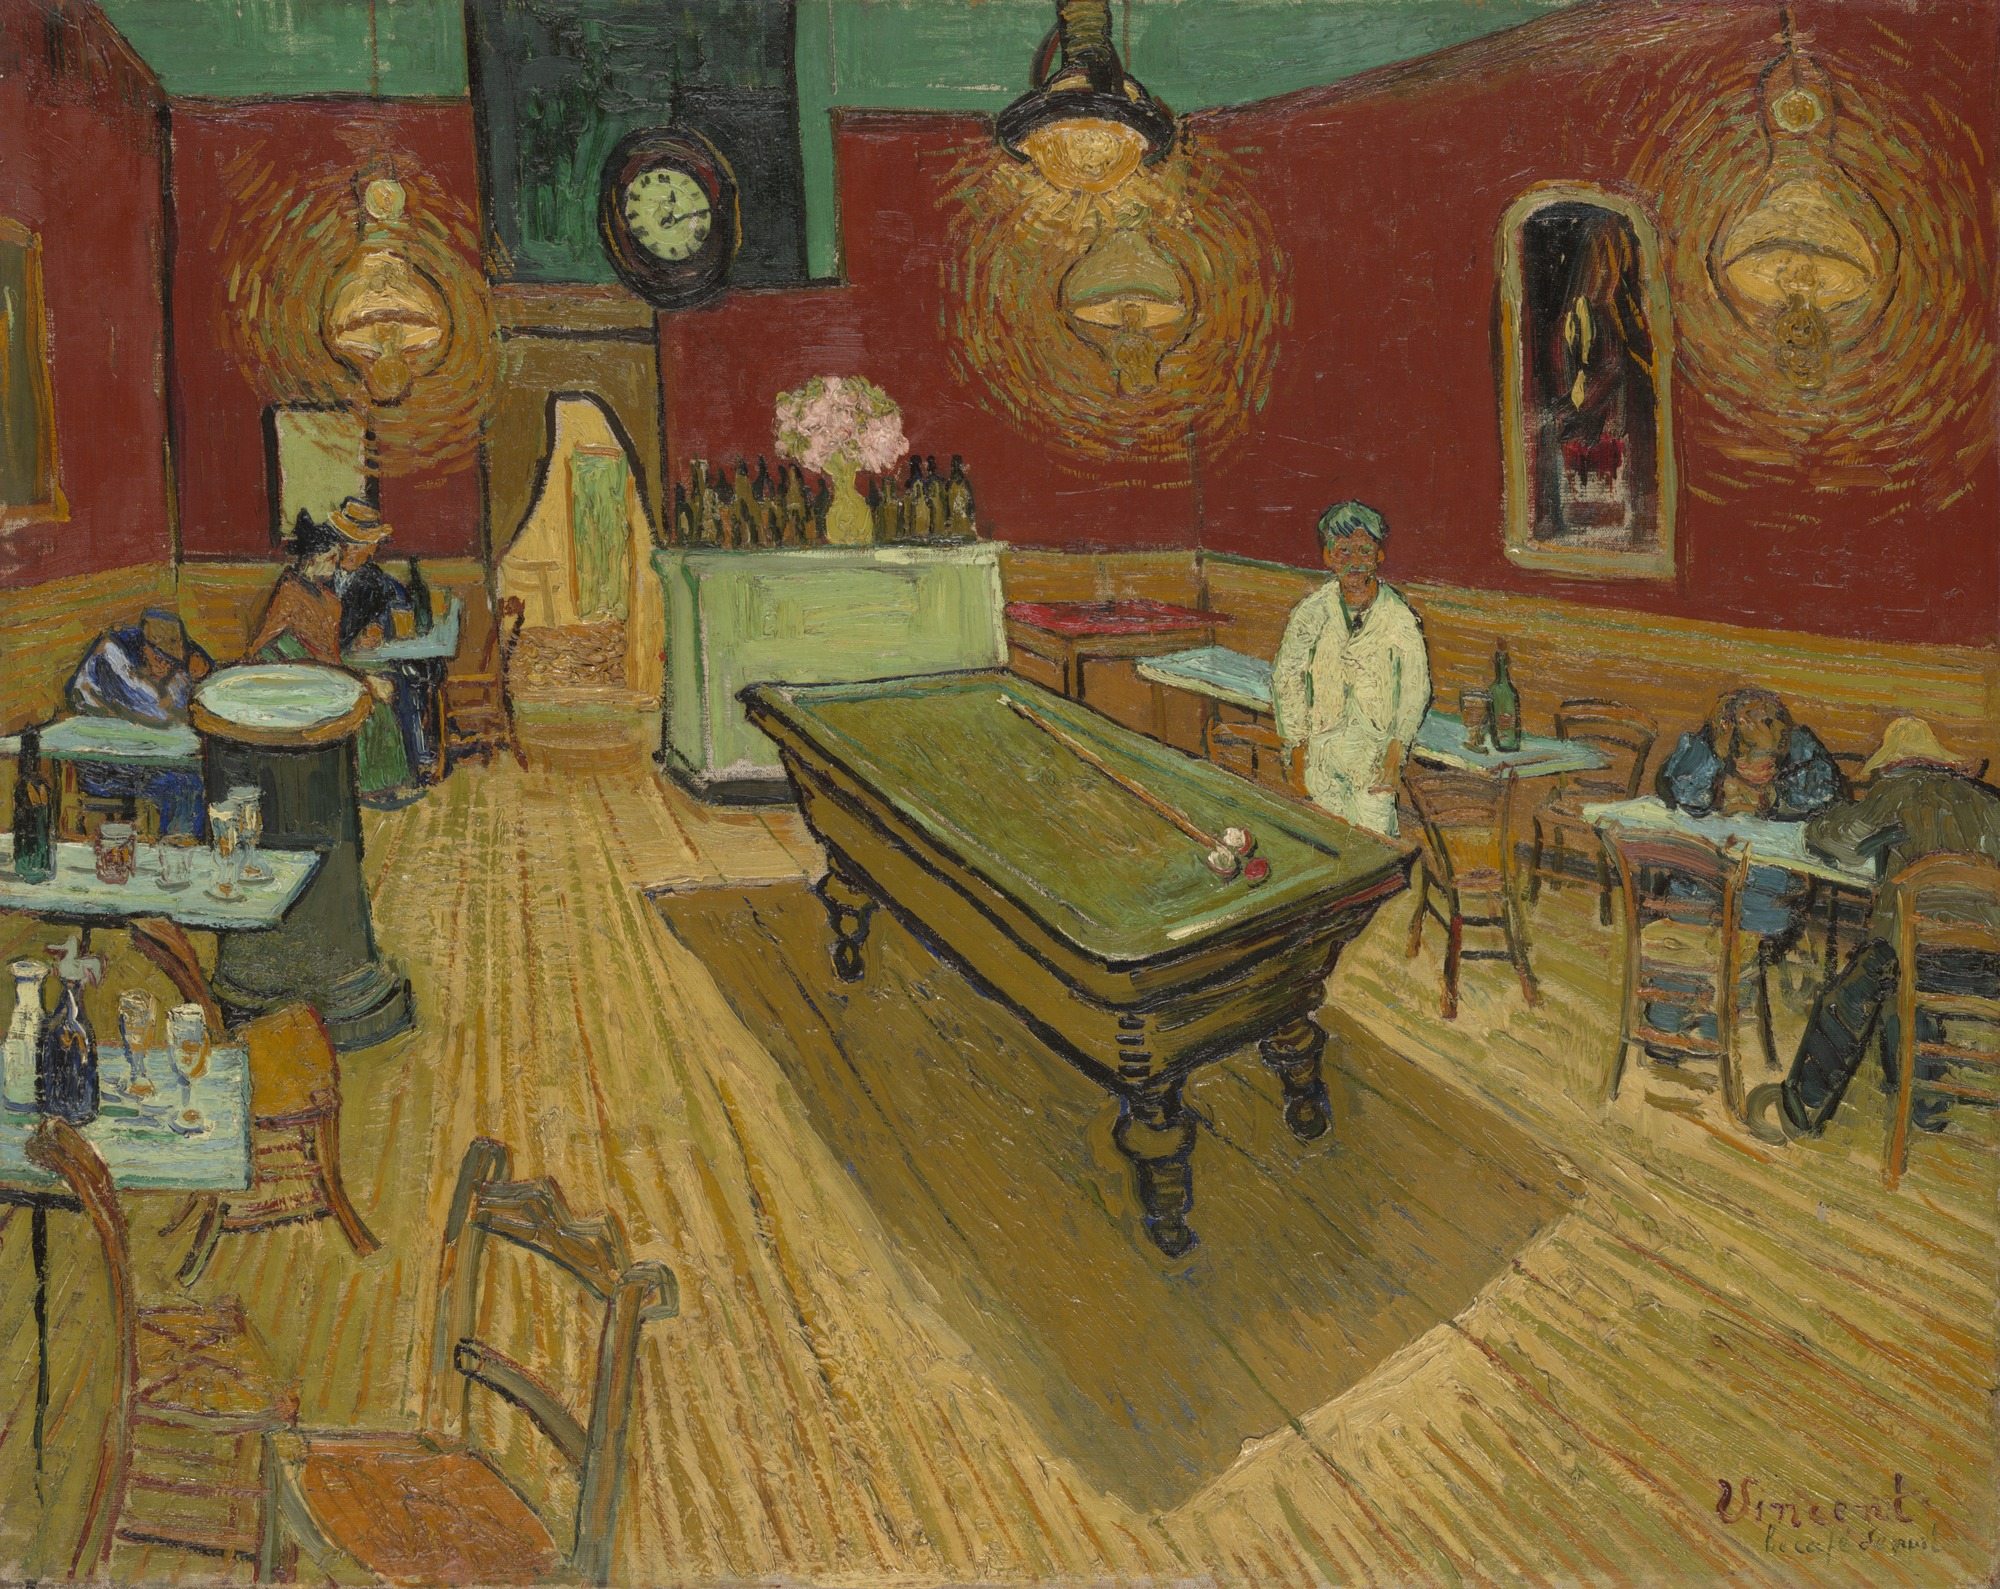 Cafeneaua de noapte by Vincent van Gogh - 1888 - 72.4 × 92.1 cm 